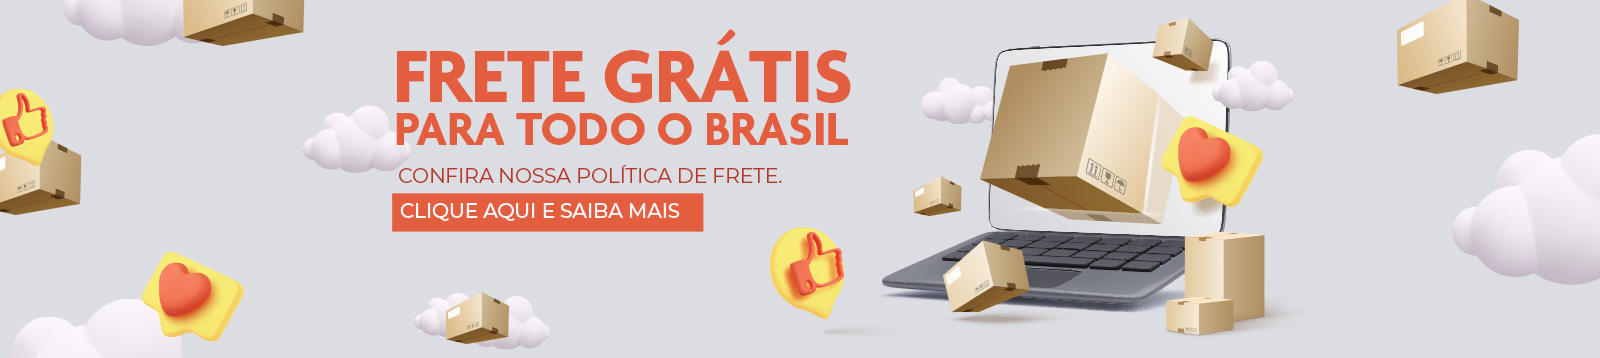 Frete Grátis para todo o Brasil